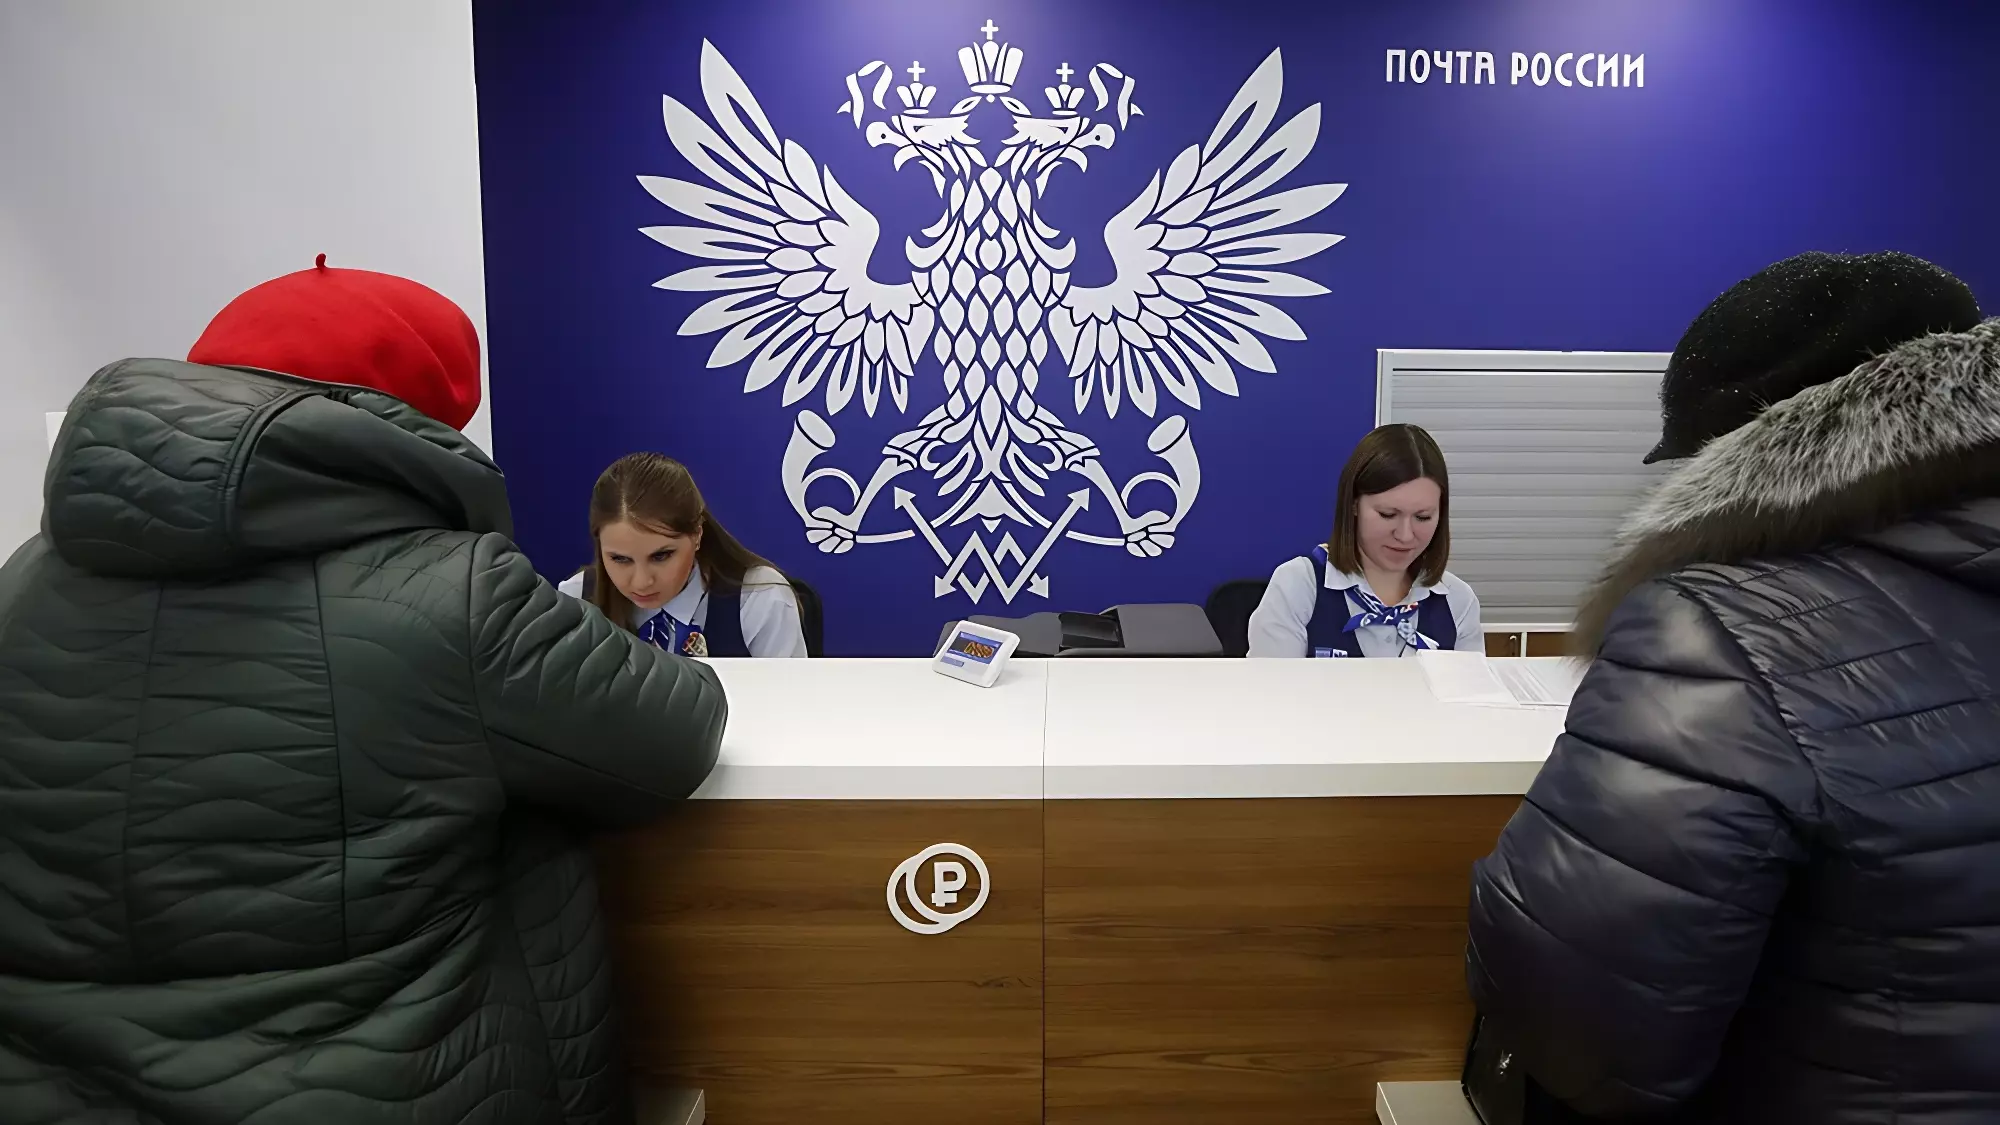 Маркетплейсы могут обязать платить «Почте России» 0,5% от оборота